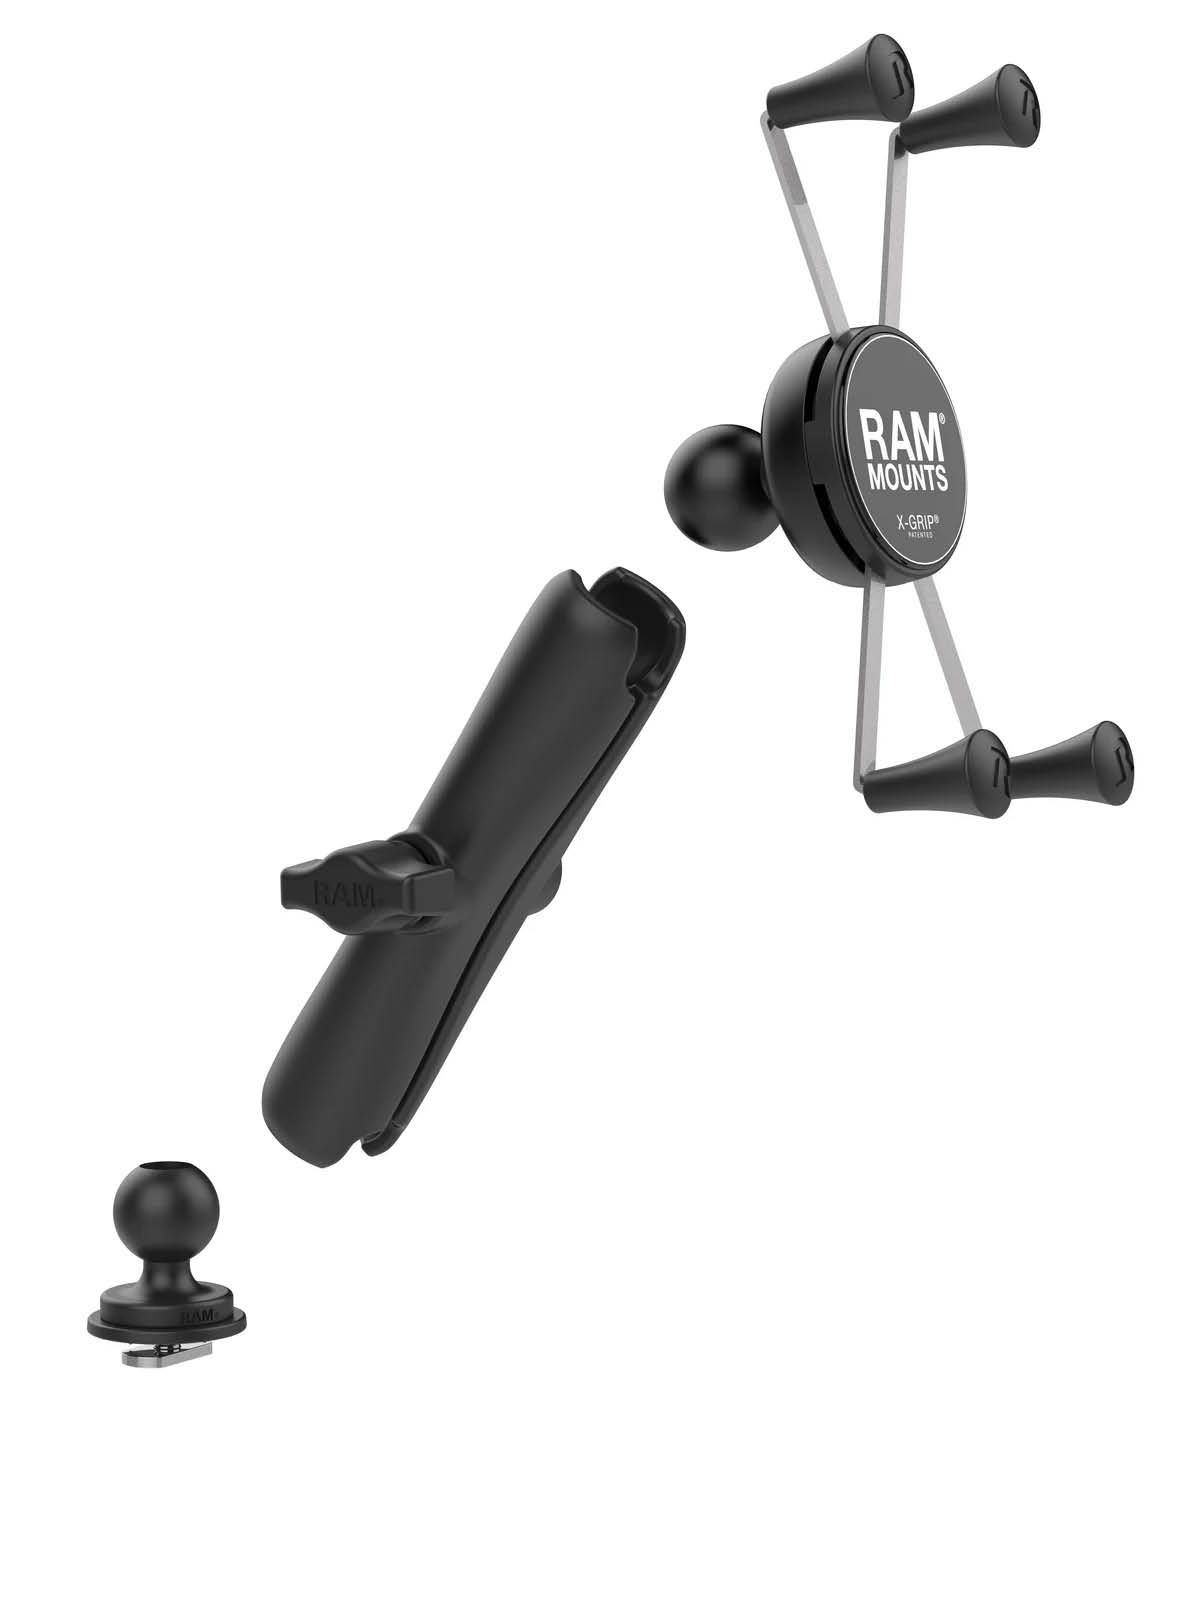 RAM Mounts Set mit X-Grip Halteklammer für Smartphones bis 114,3 mm Breite - B-Kugel (1 Zoll), Track-Ball, langer Verbindungsarm